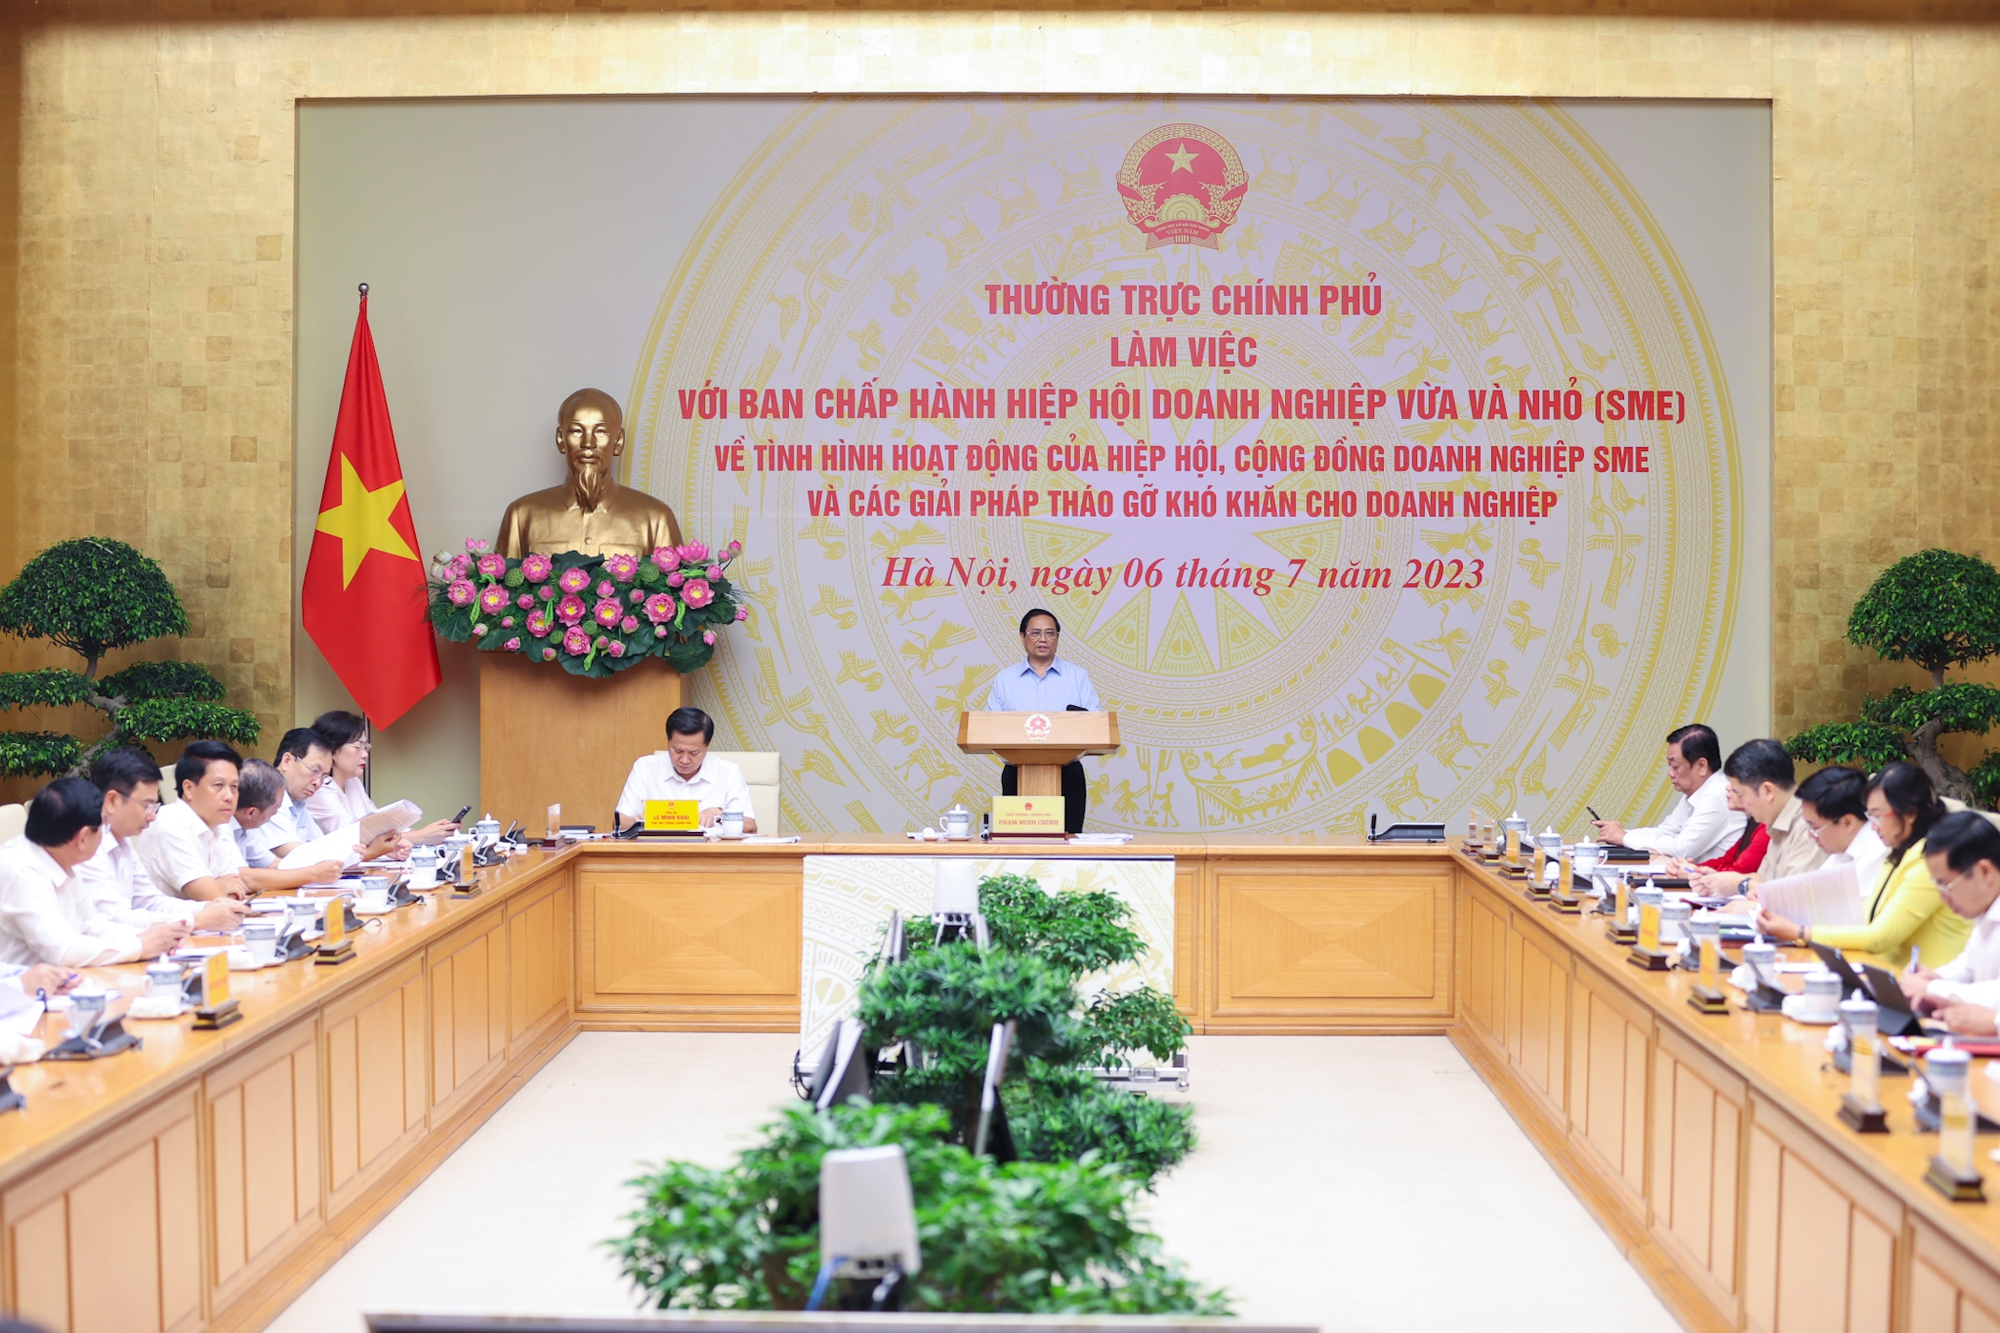 Thủ tướng Chính phủ làm việc với Ban Chấp hành Hiệp hội Doanh nghiệp vừa và nhỏ (SME) Việt Nam 